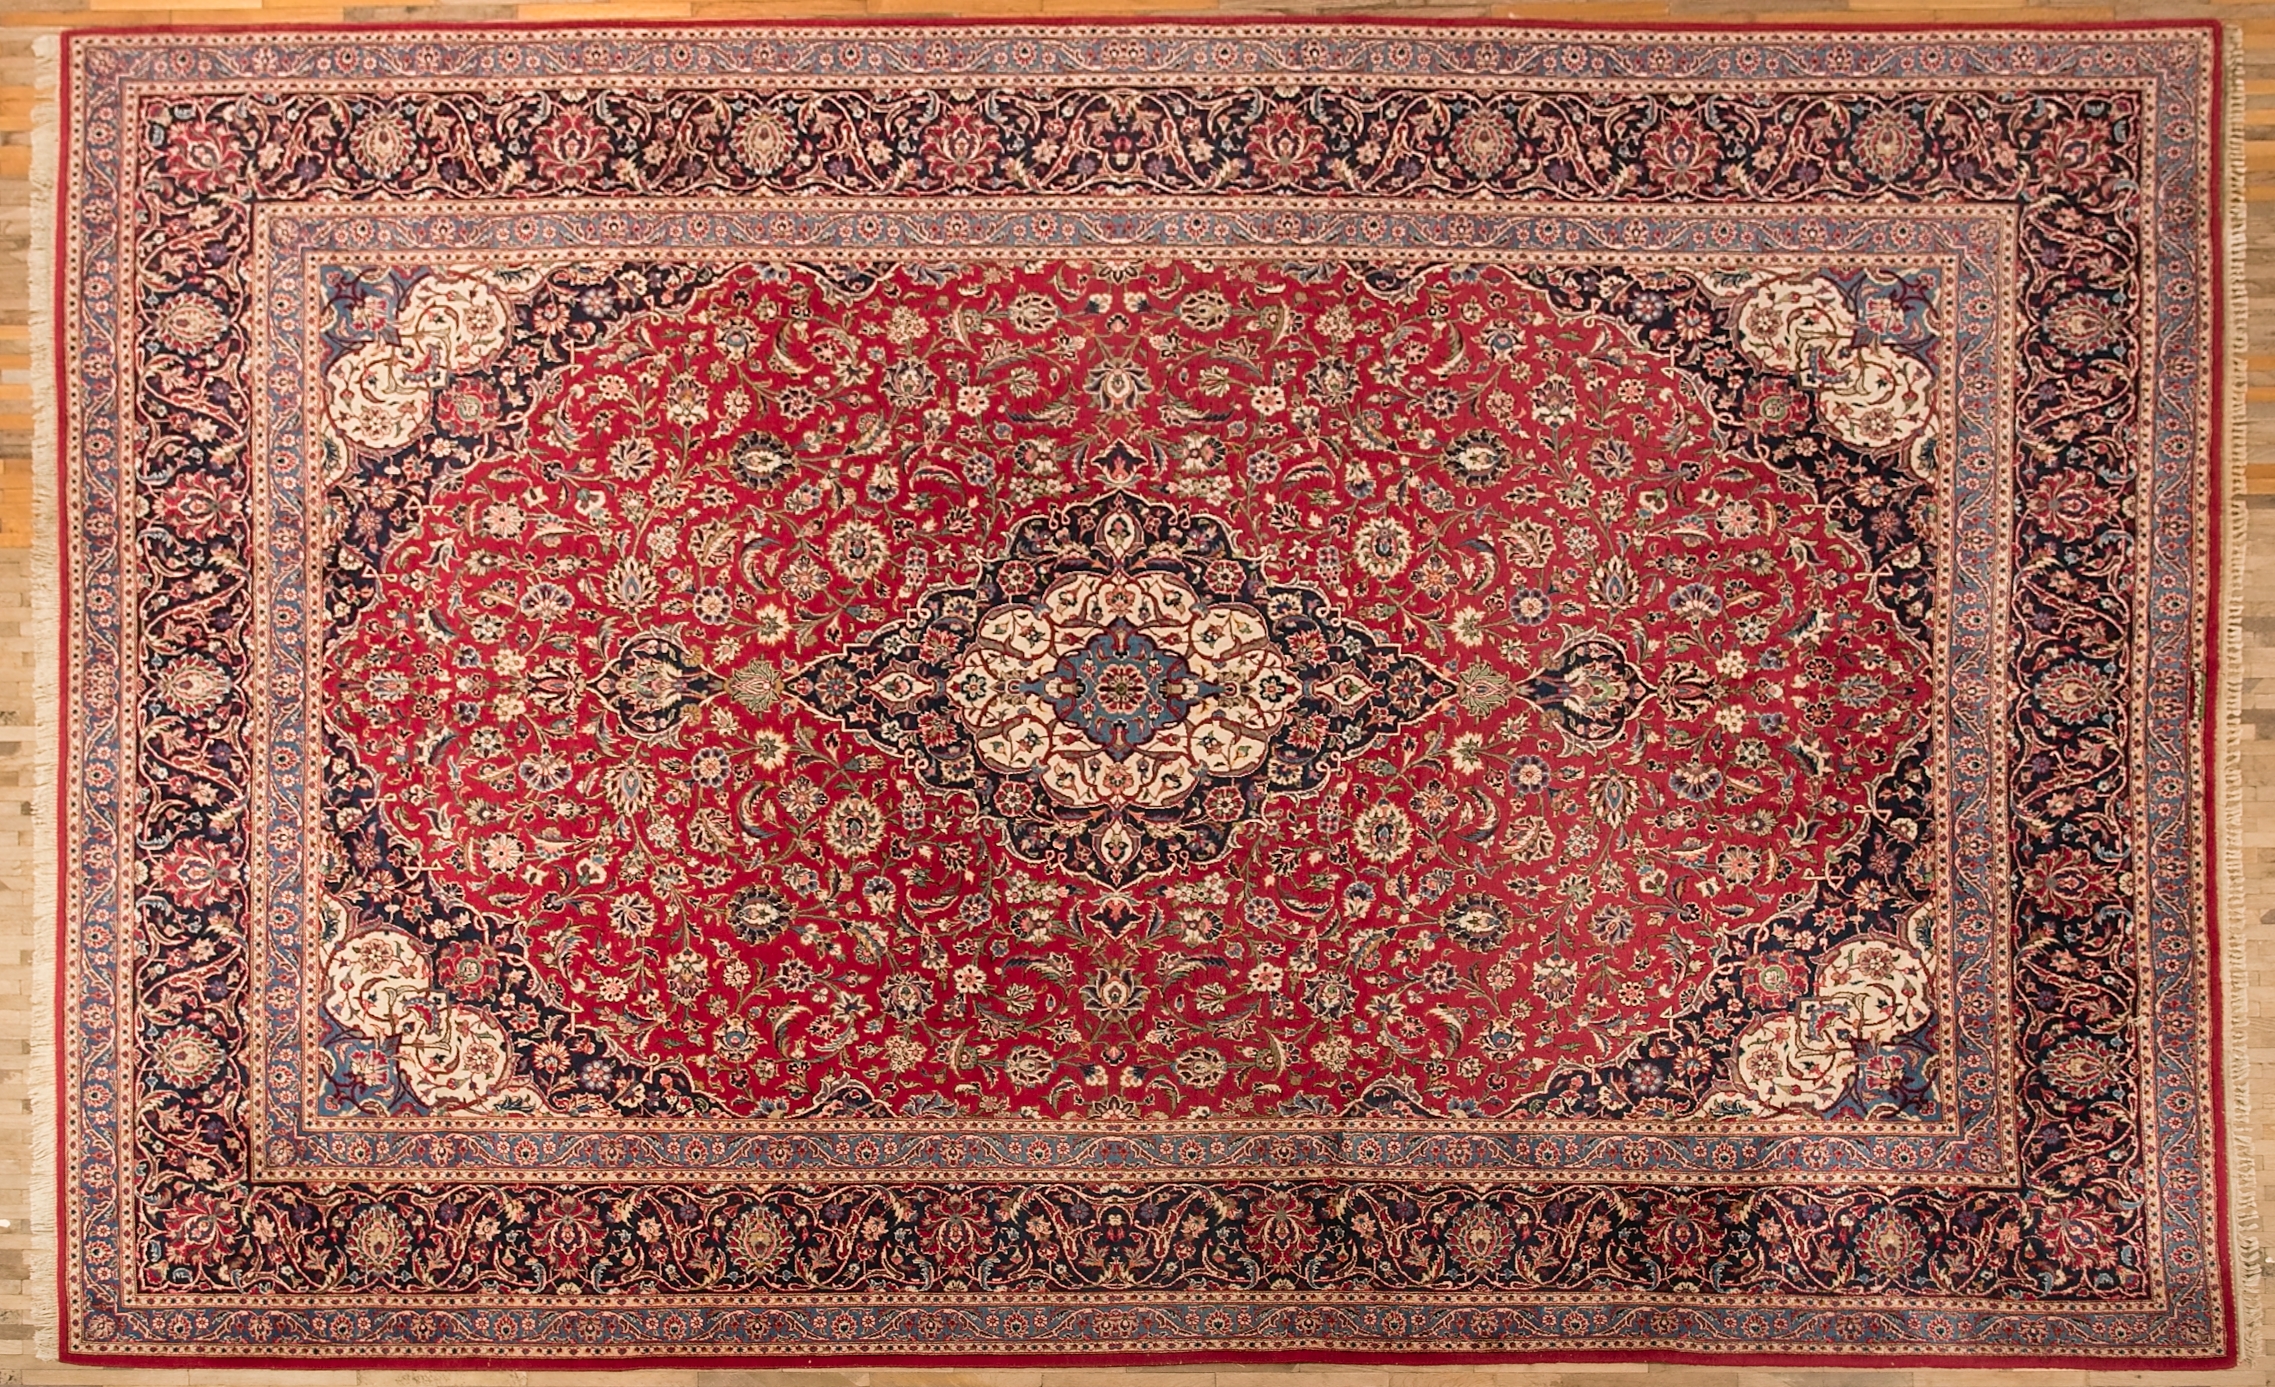 Velký perský koberec Kashan, signovaný 451 x 325 cm